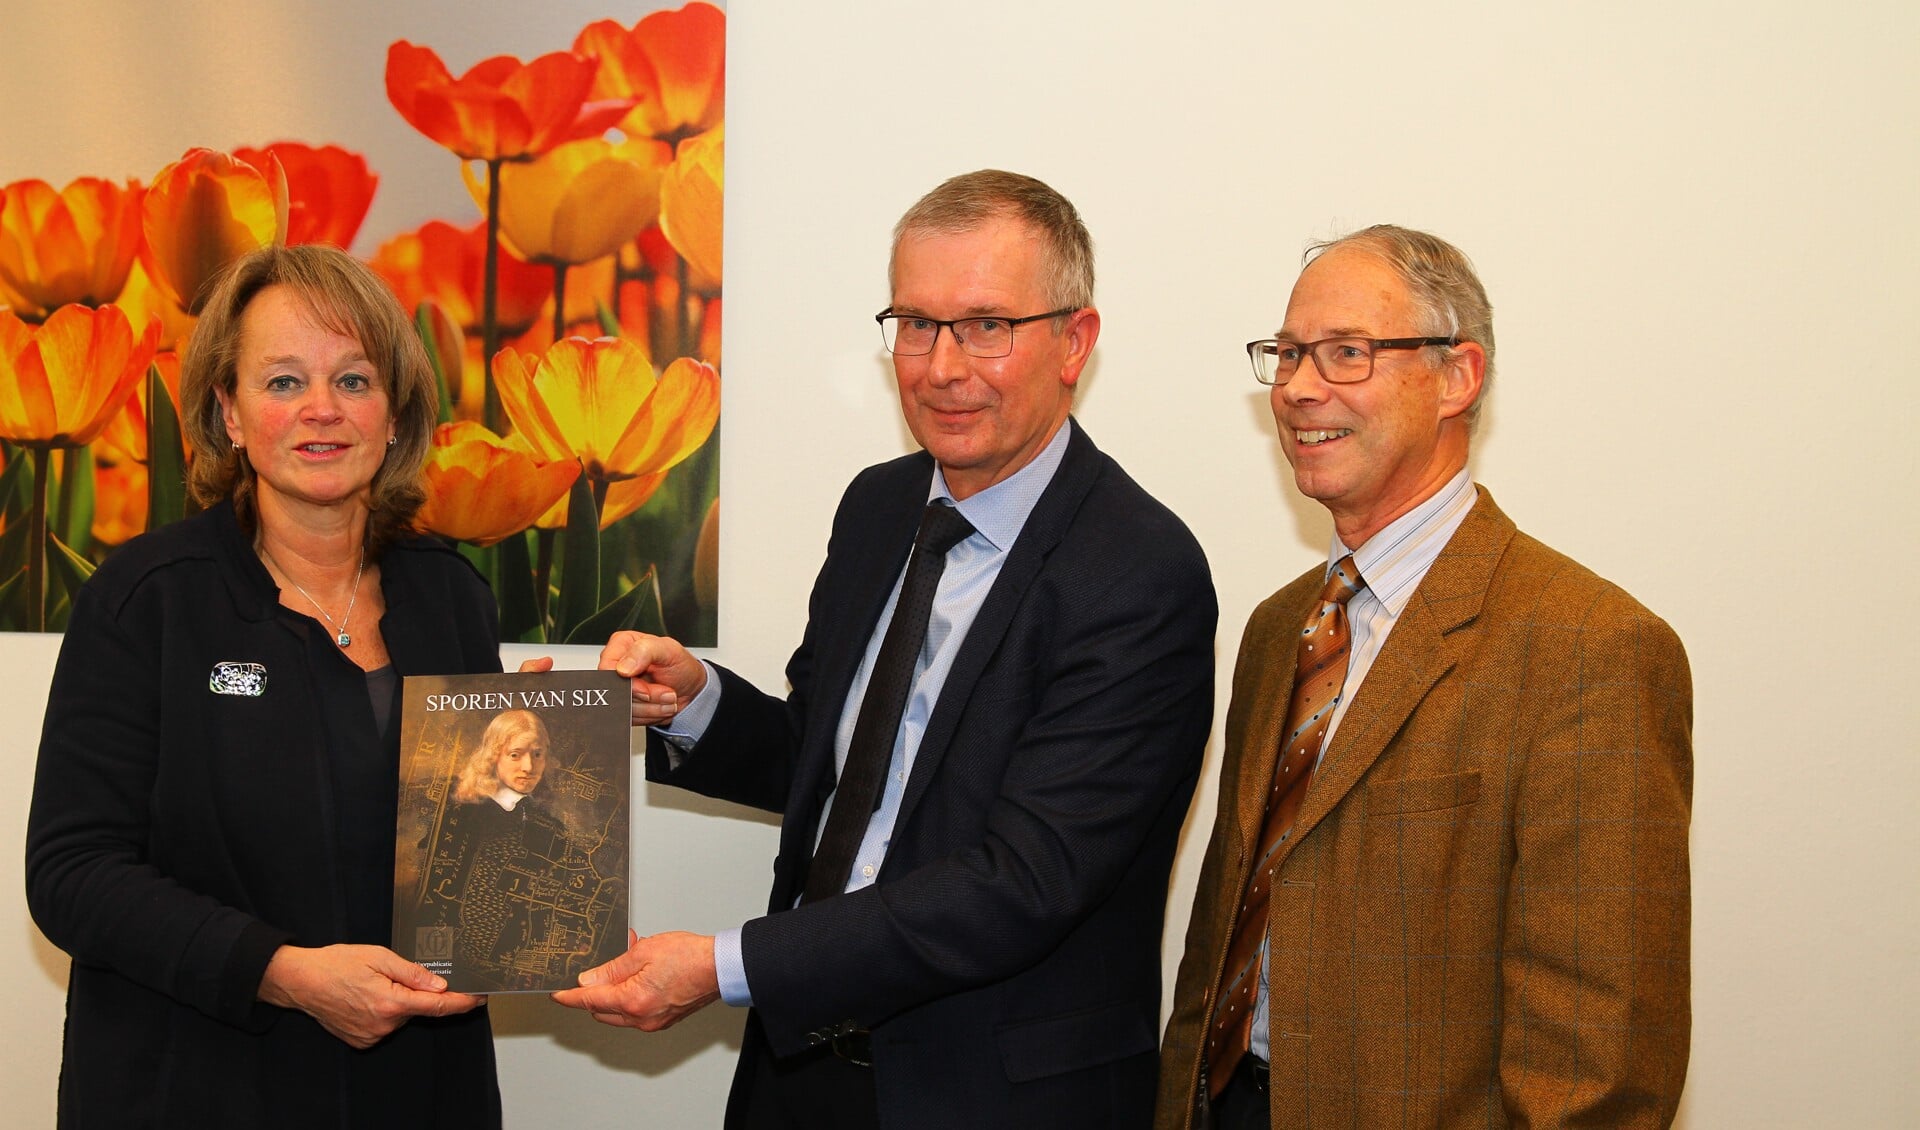 Vol trots presenteert Henk Schaap (midden), geflankeerd door voorzitter Eric Prince, het boek Sporen van Six aan burgemeester Spruit. 